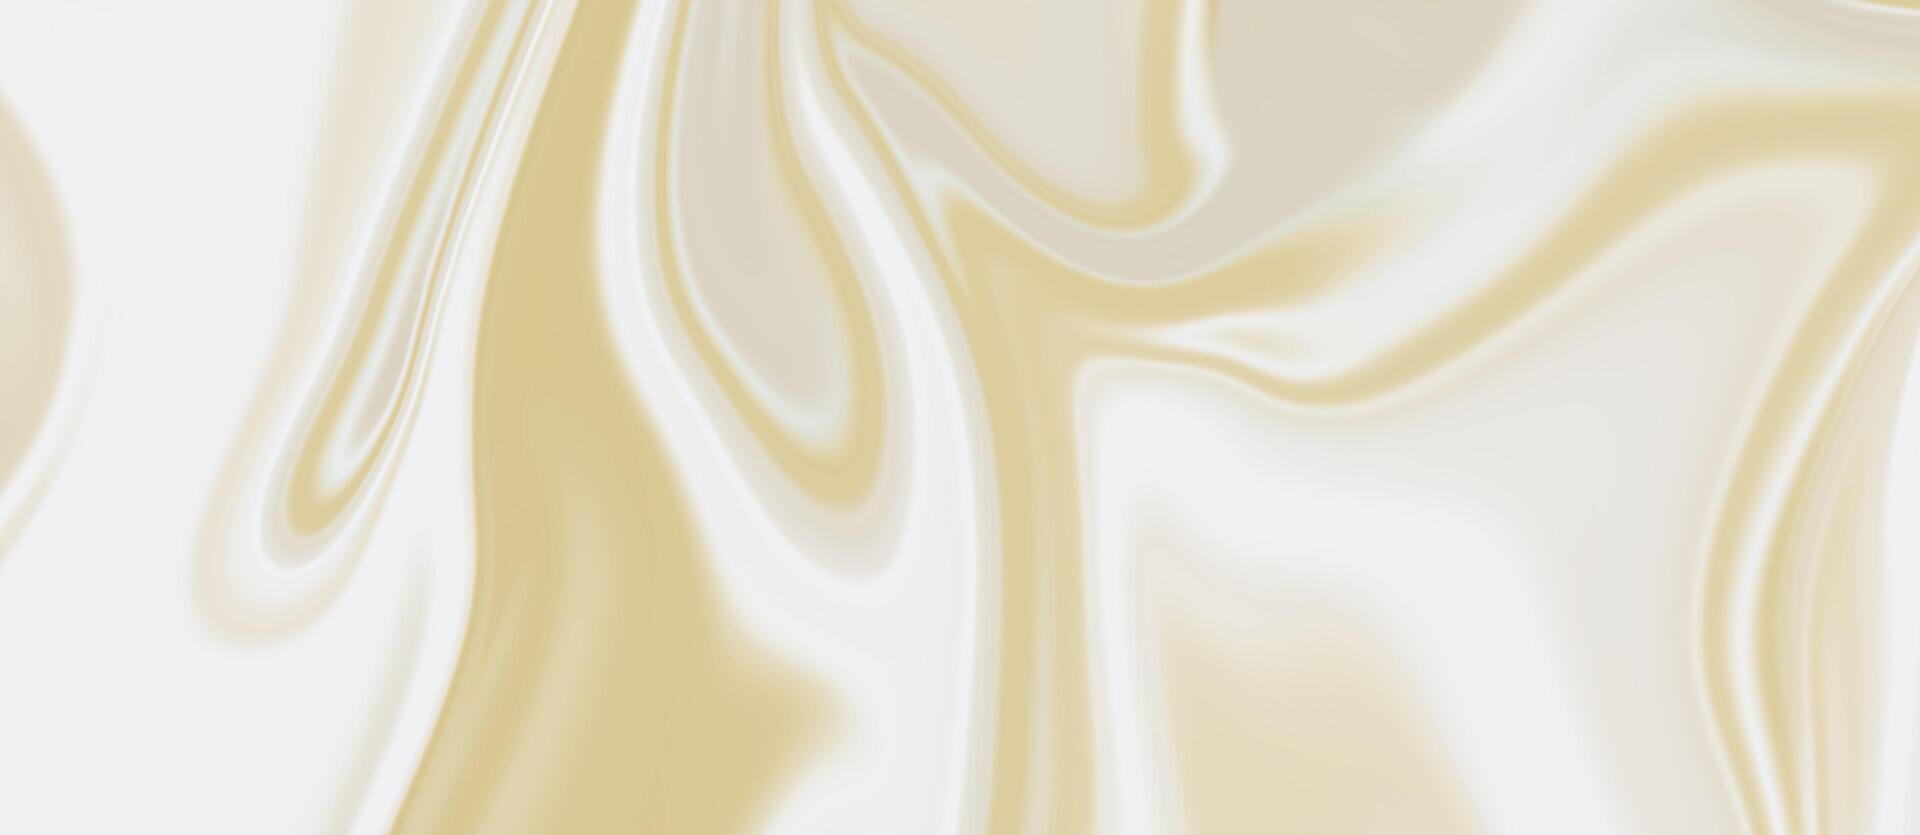 abstract vloeistof achtergrond. wit goud marmeren textuur. luxe marmeren vloeibaar maken. vector